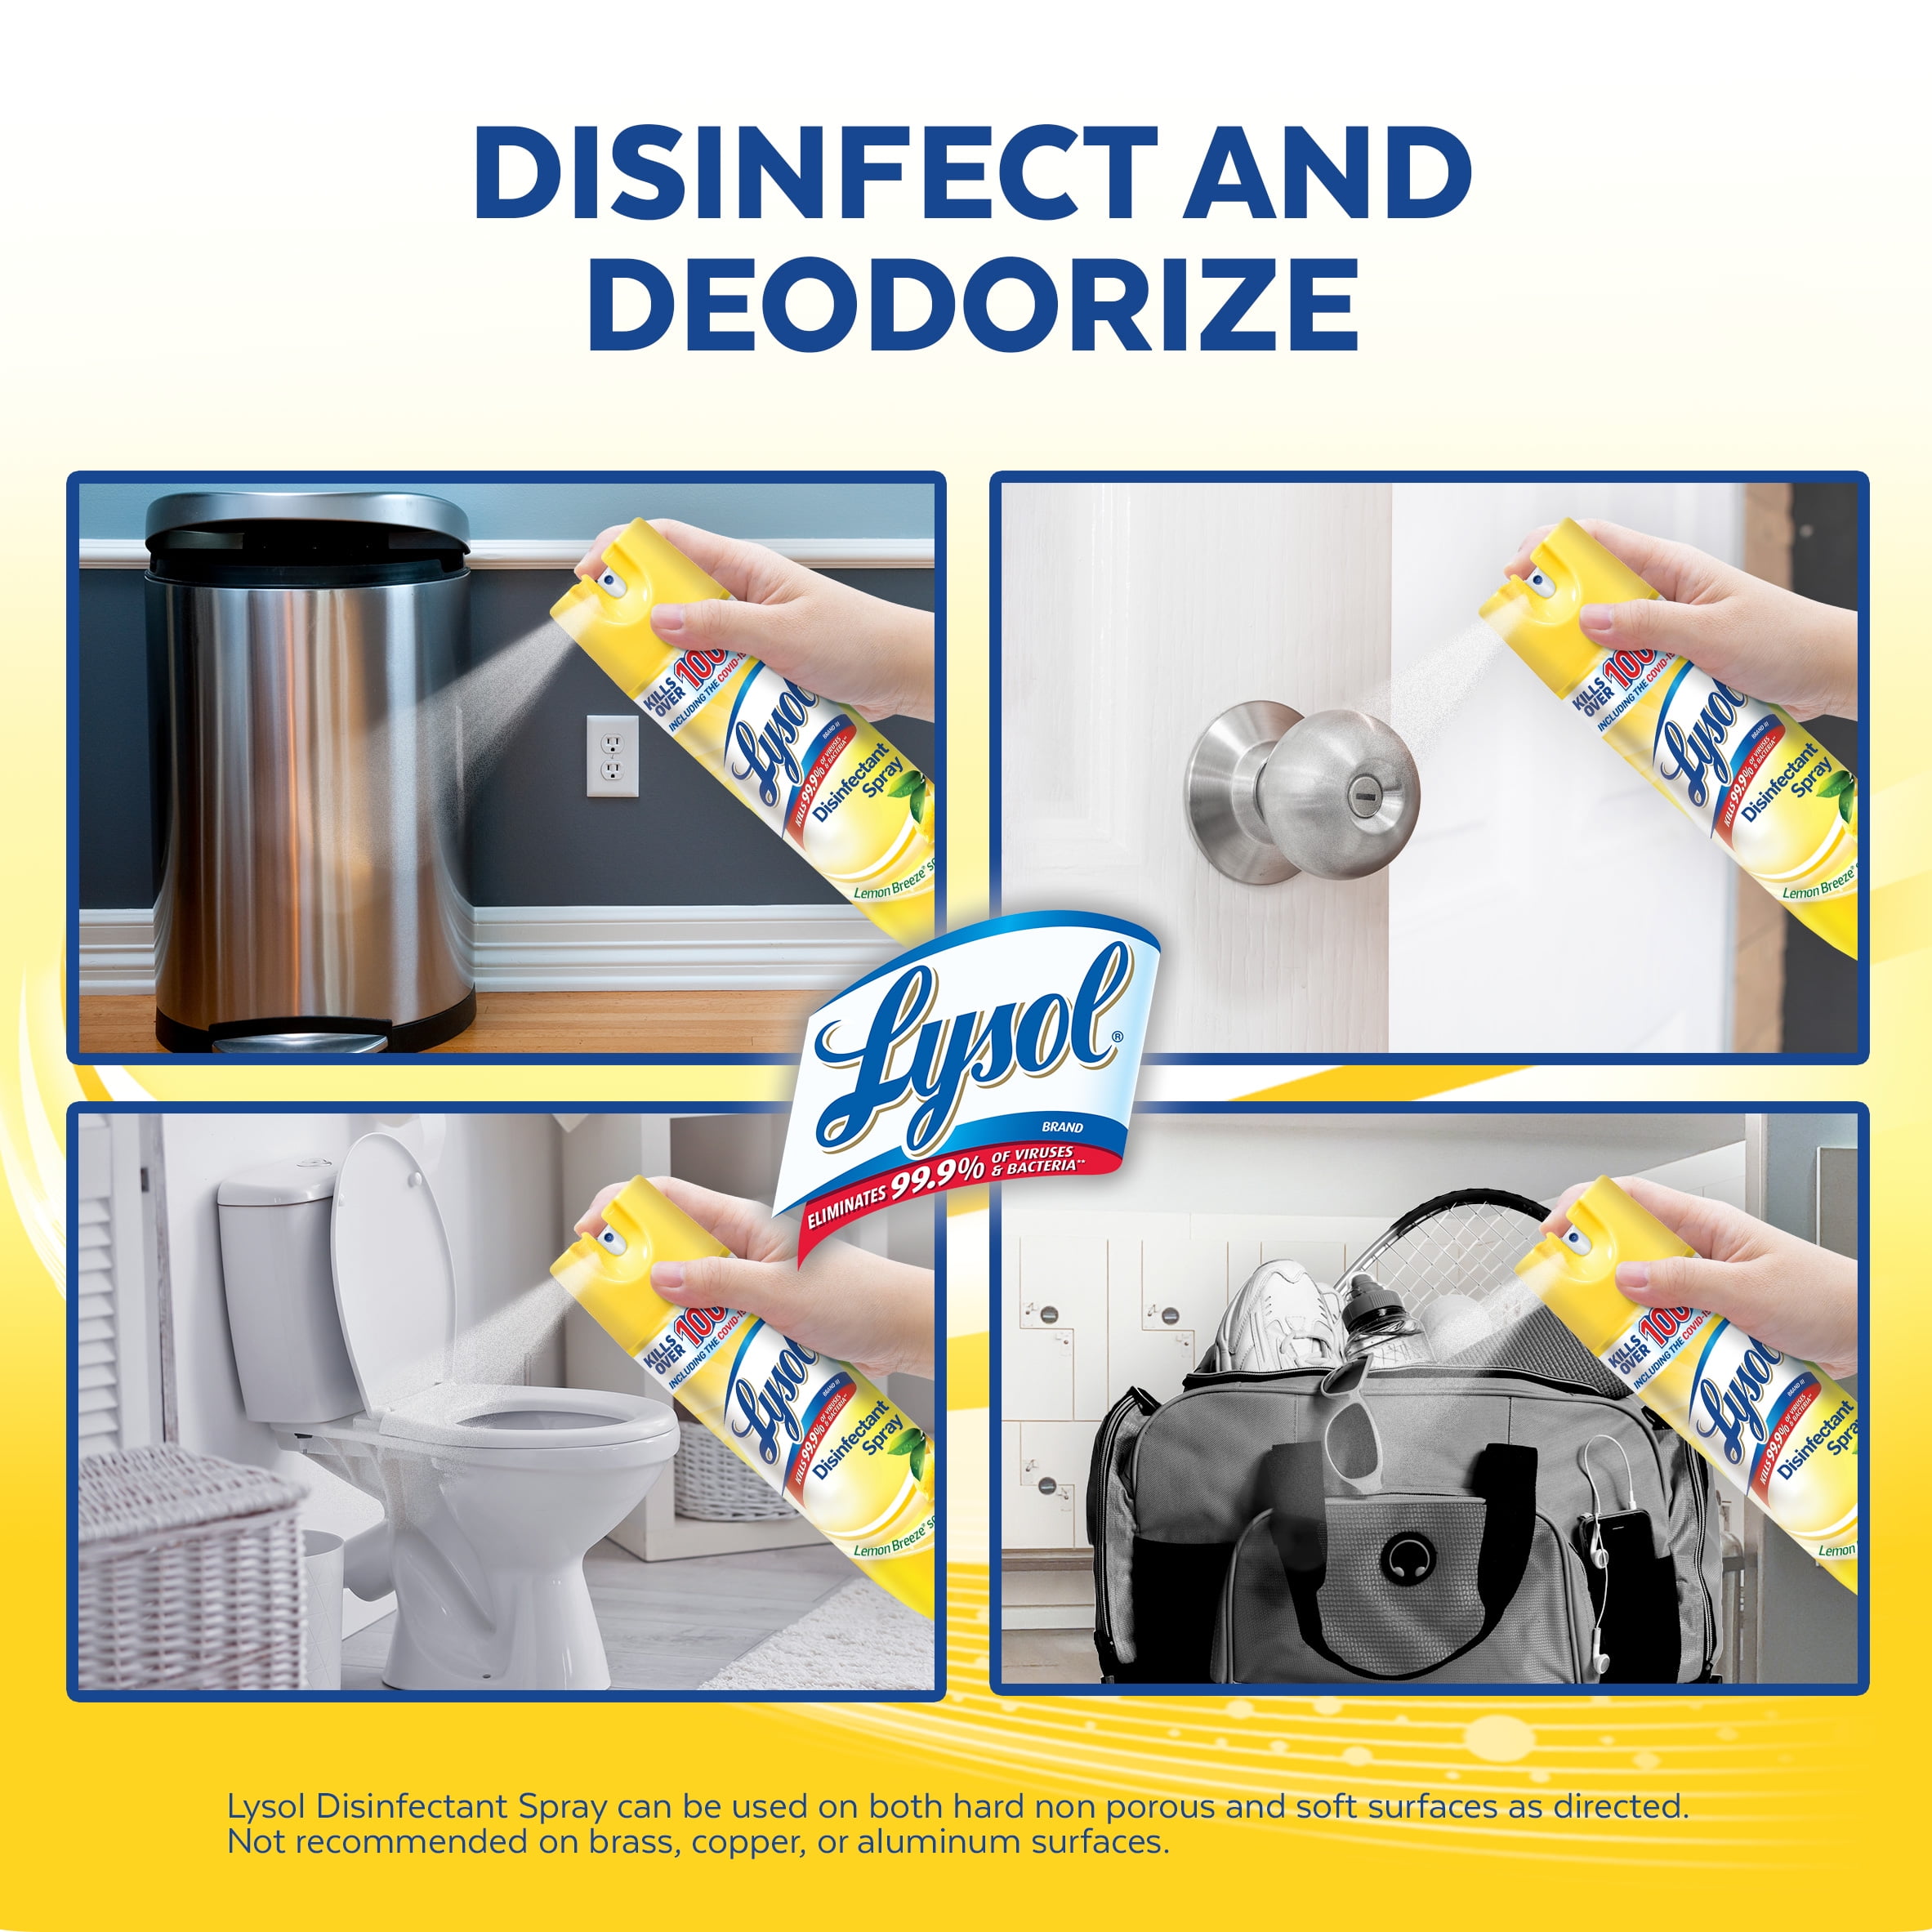 Lysol Lemon Breeze Scent Disinfectant Spray, 19 oz - Ralphs